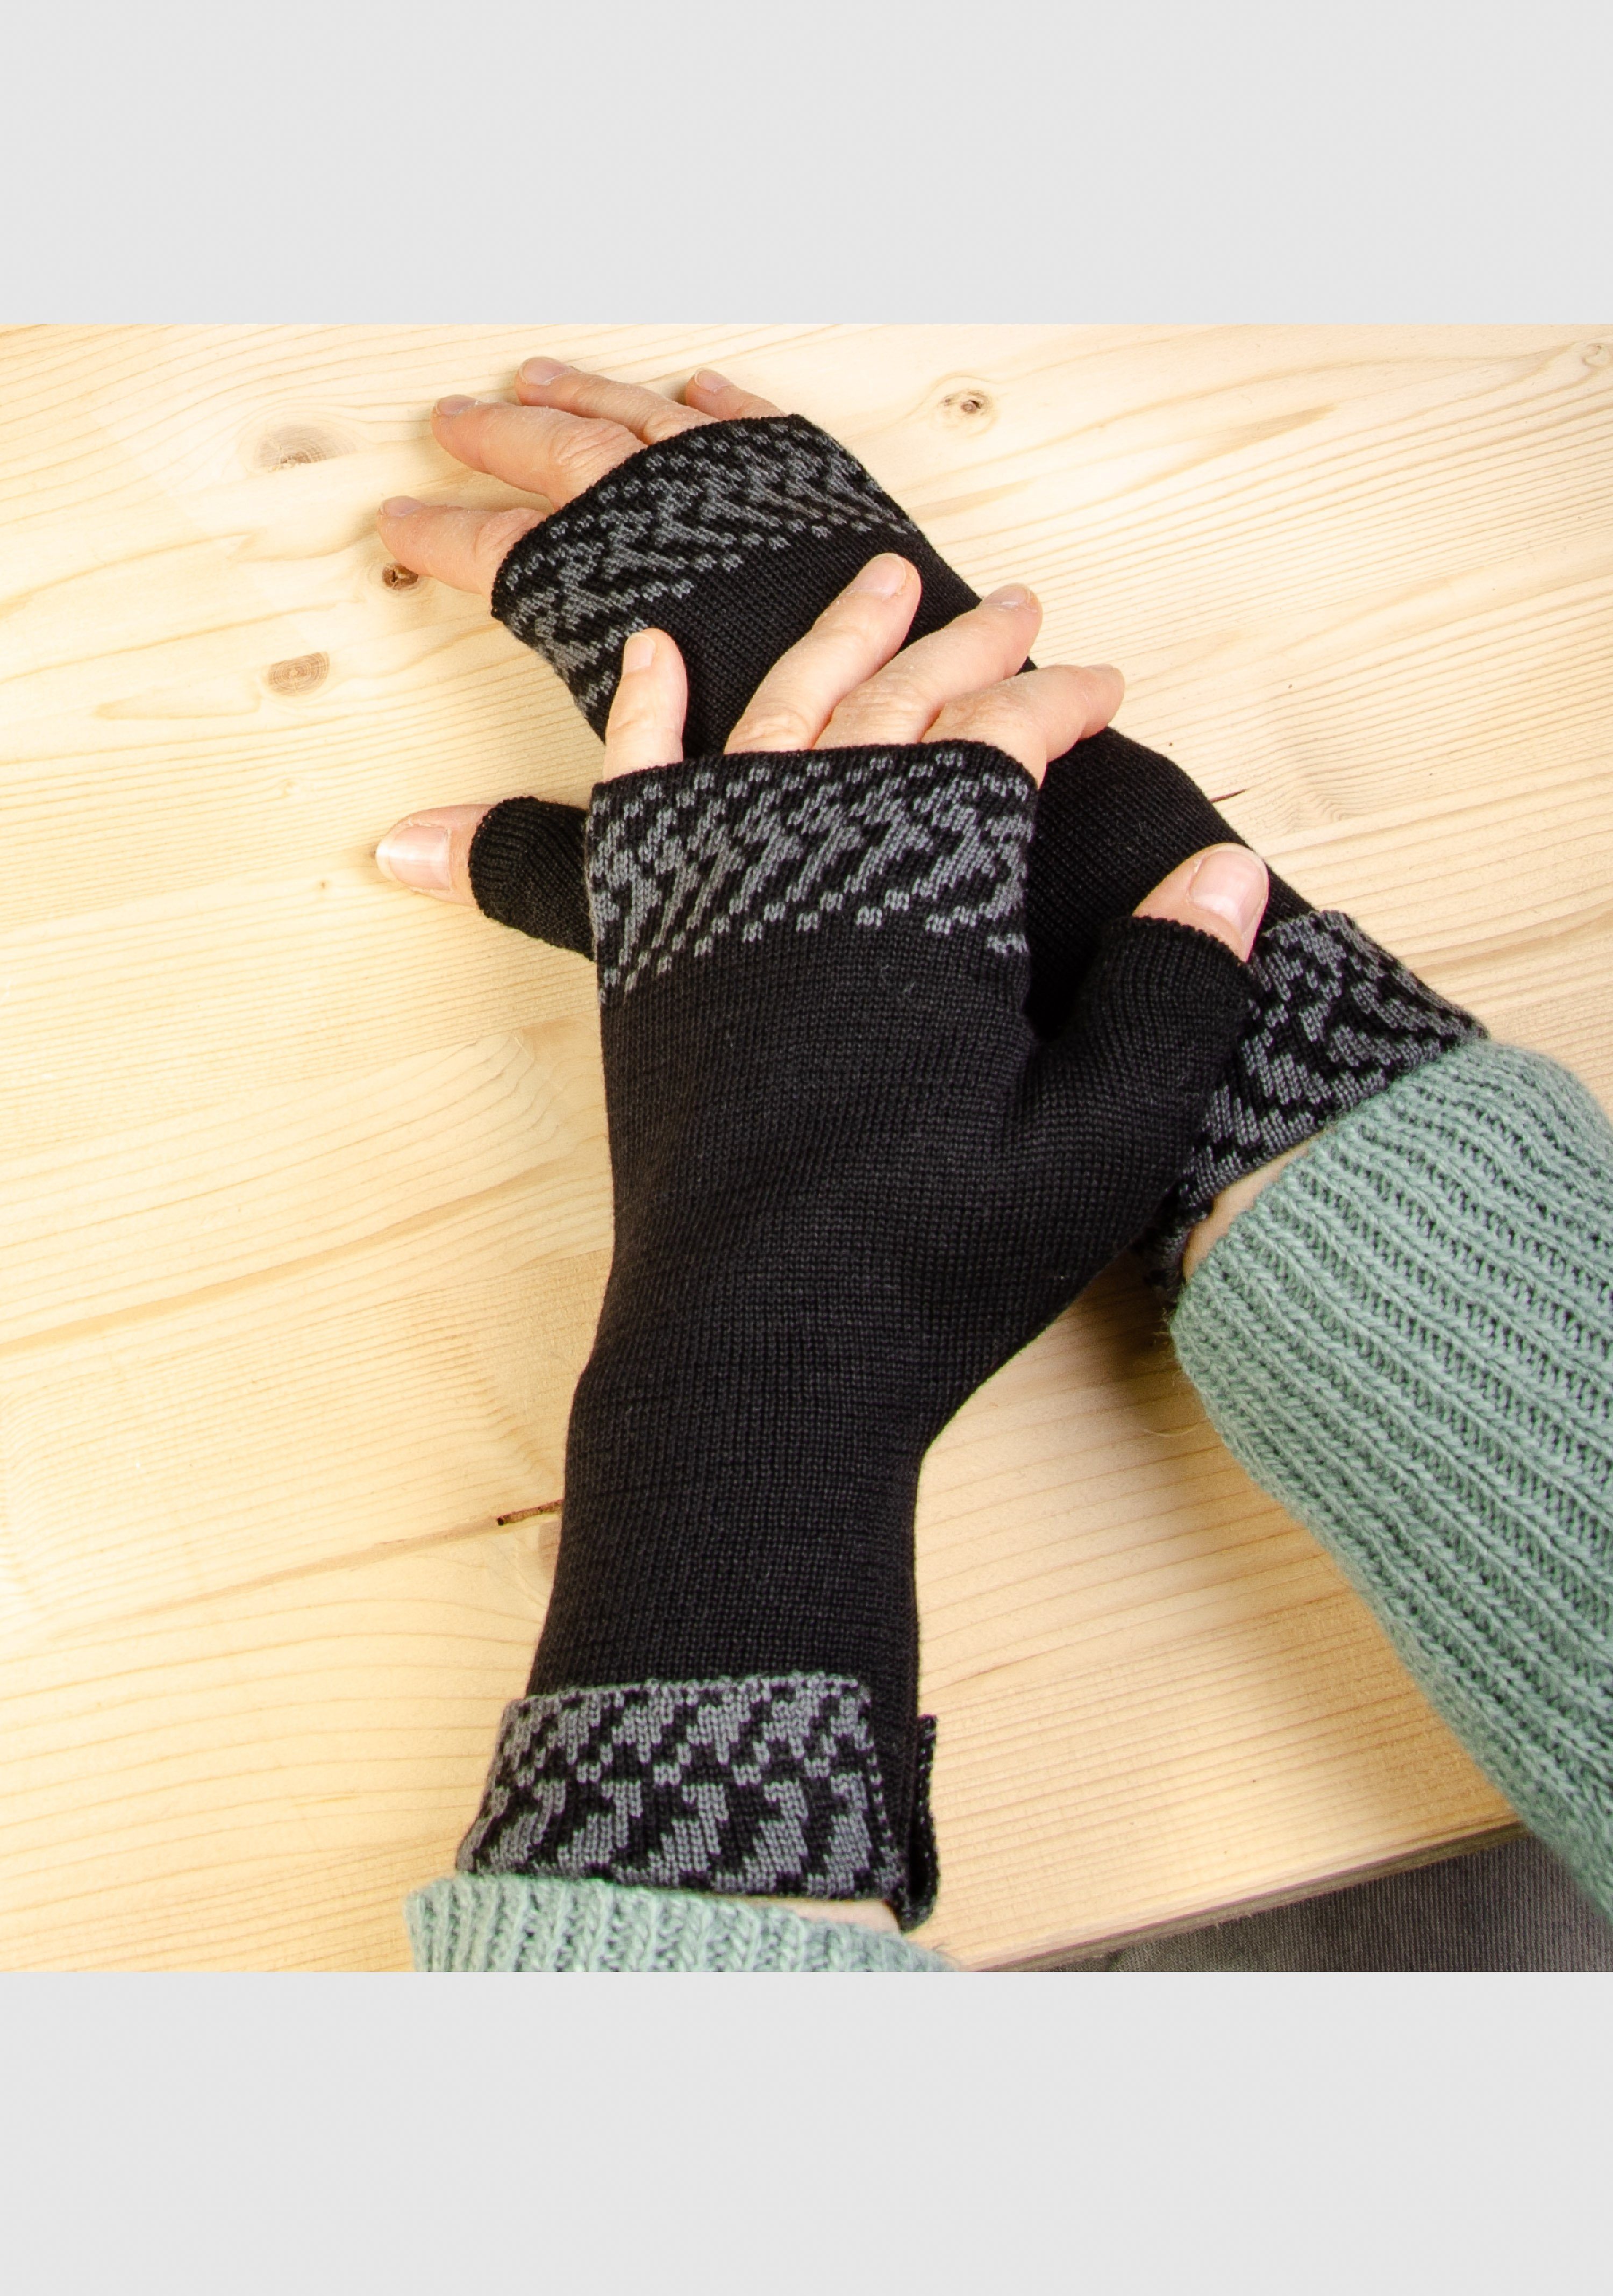 LANARTO slow fashion Strickhandschuhe Merino Handwärmer Pixel in vielen Farben aus 100% Merino extrasoft schwarz_graphit